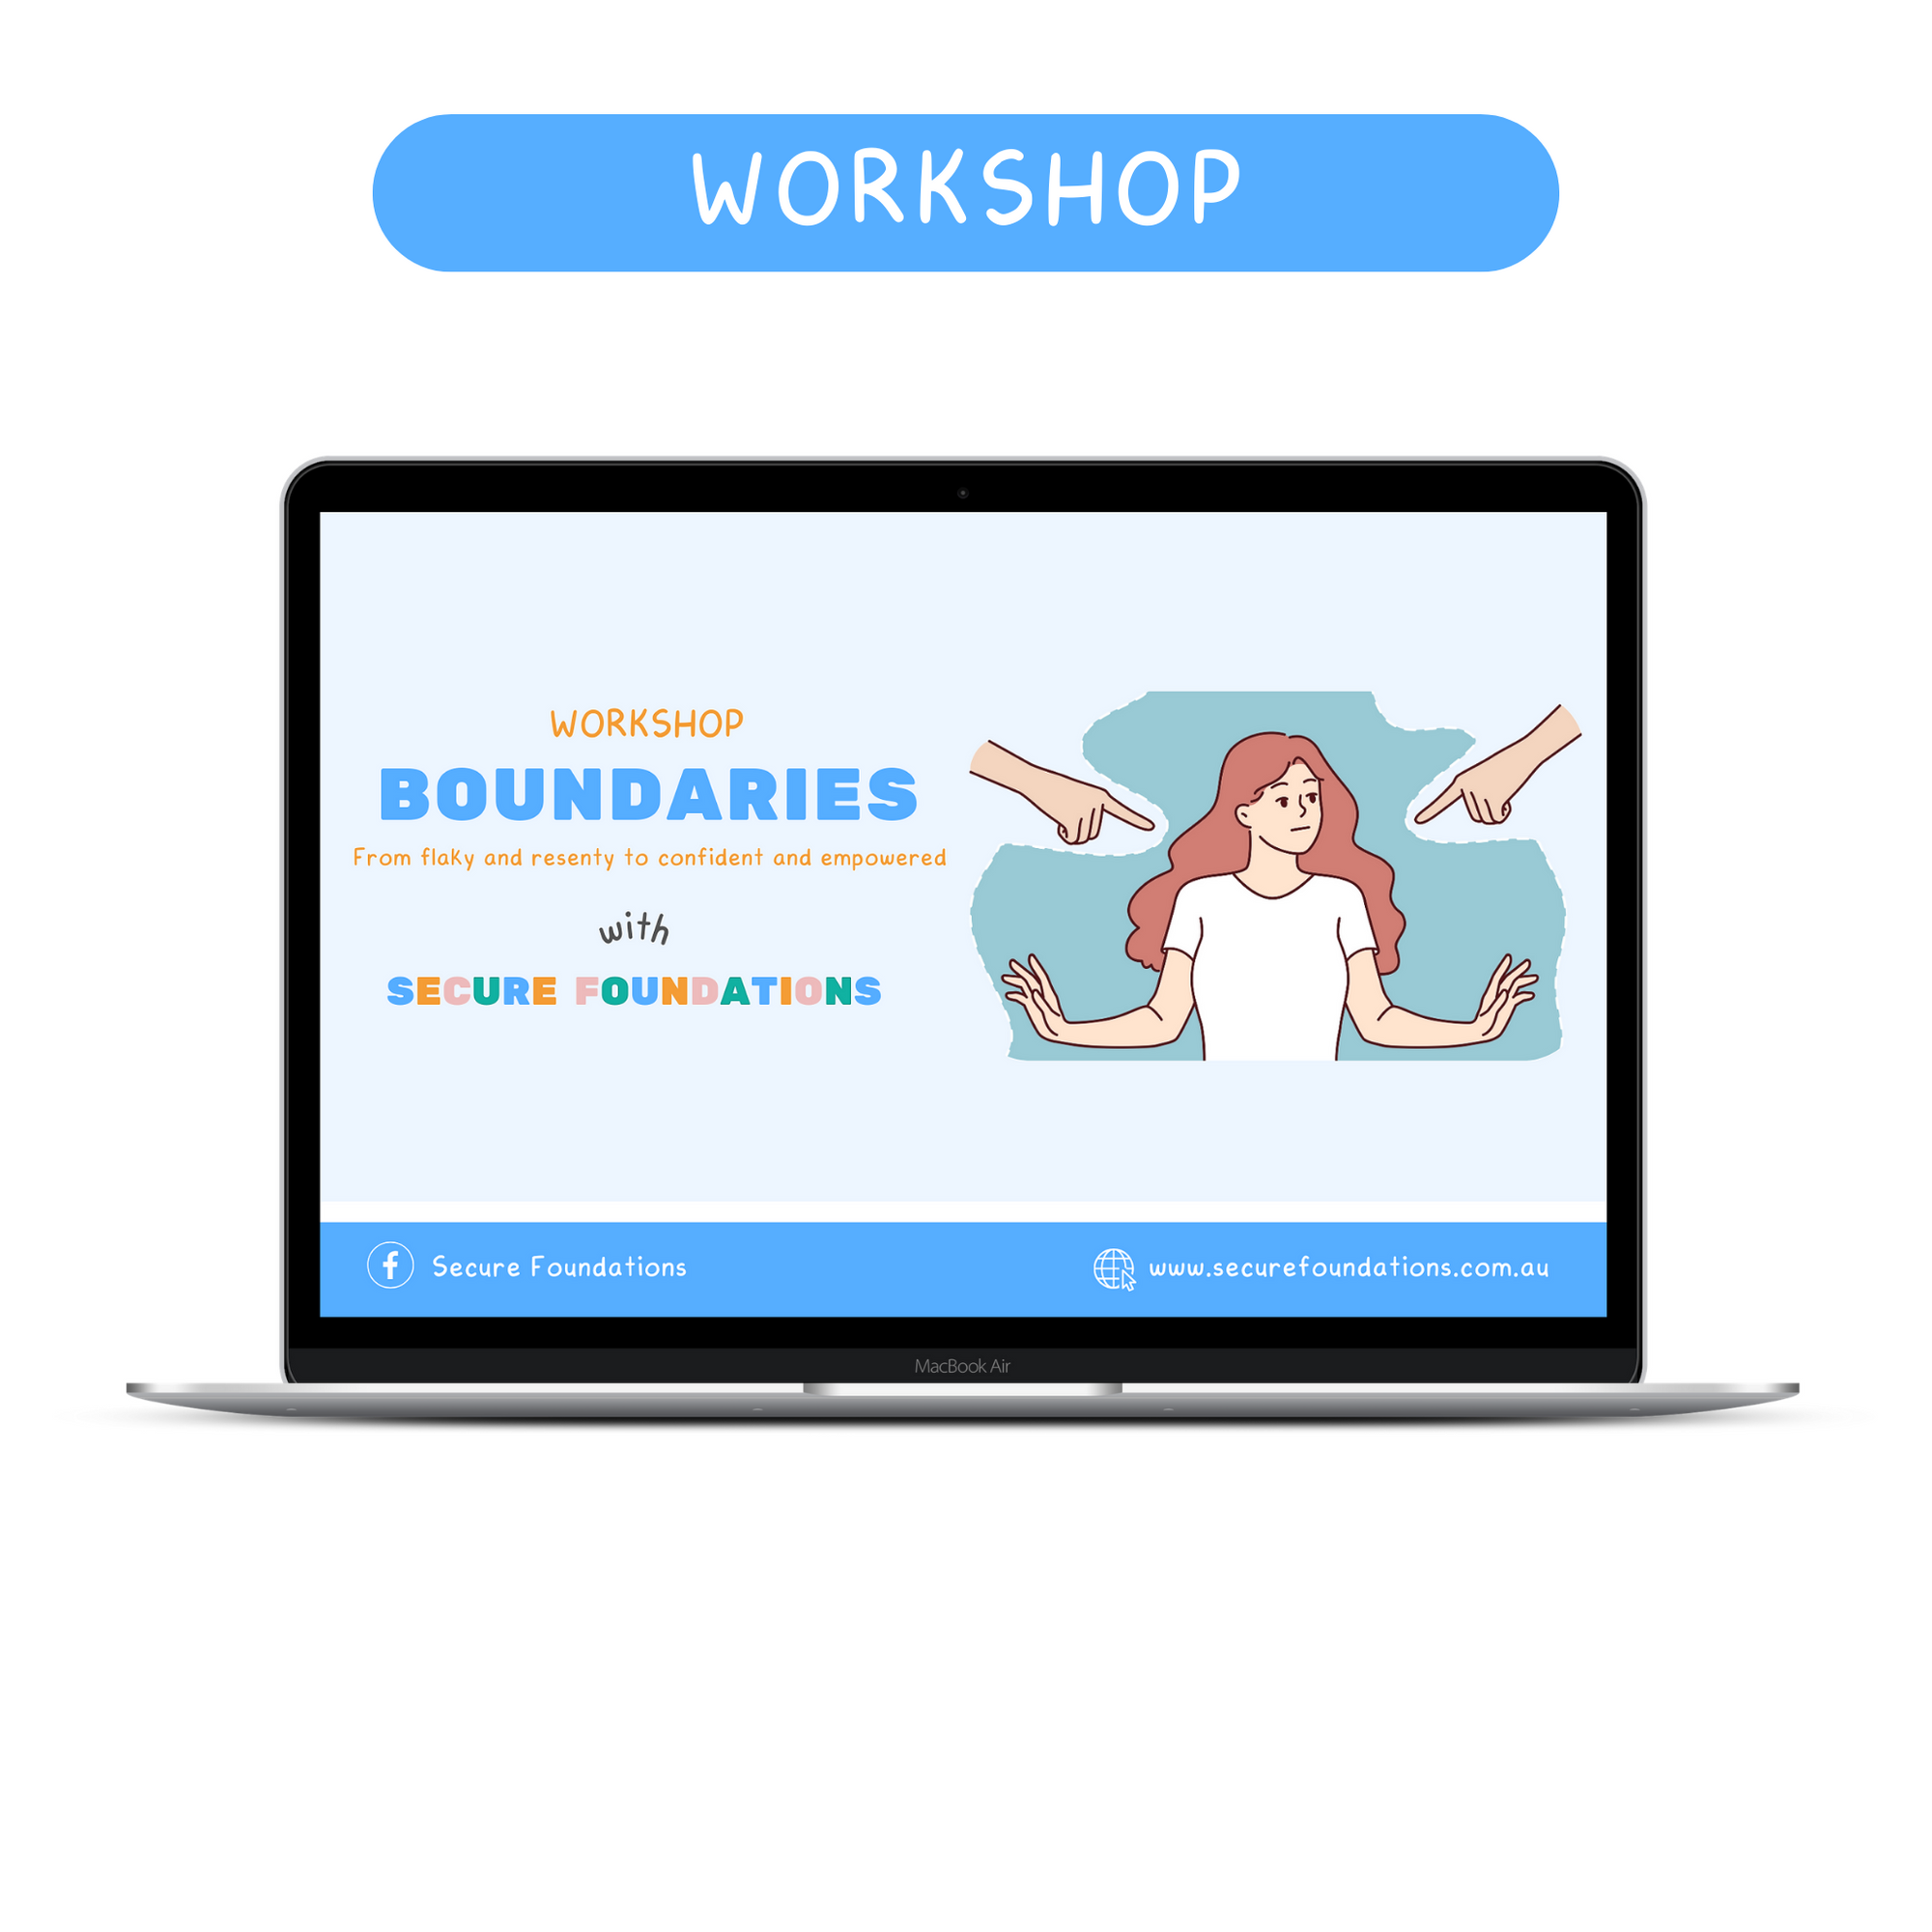 Workshop: Boundaries